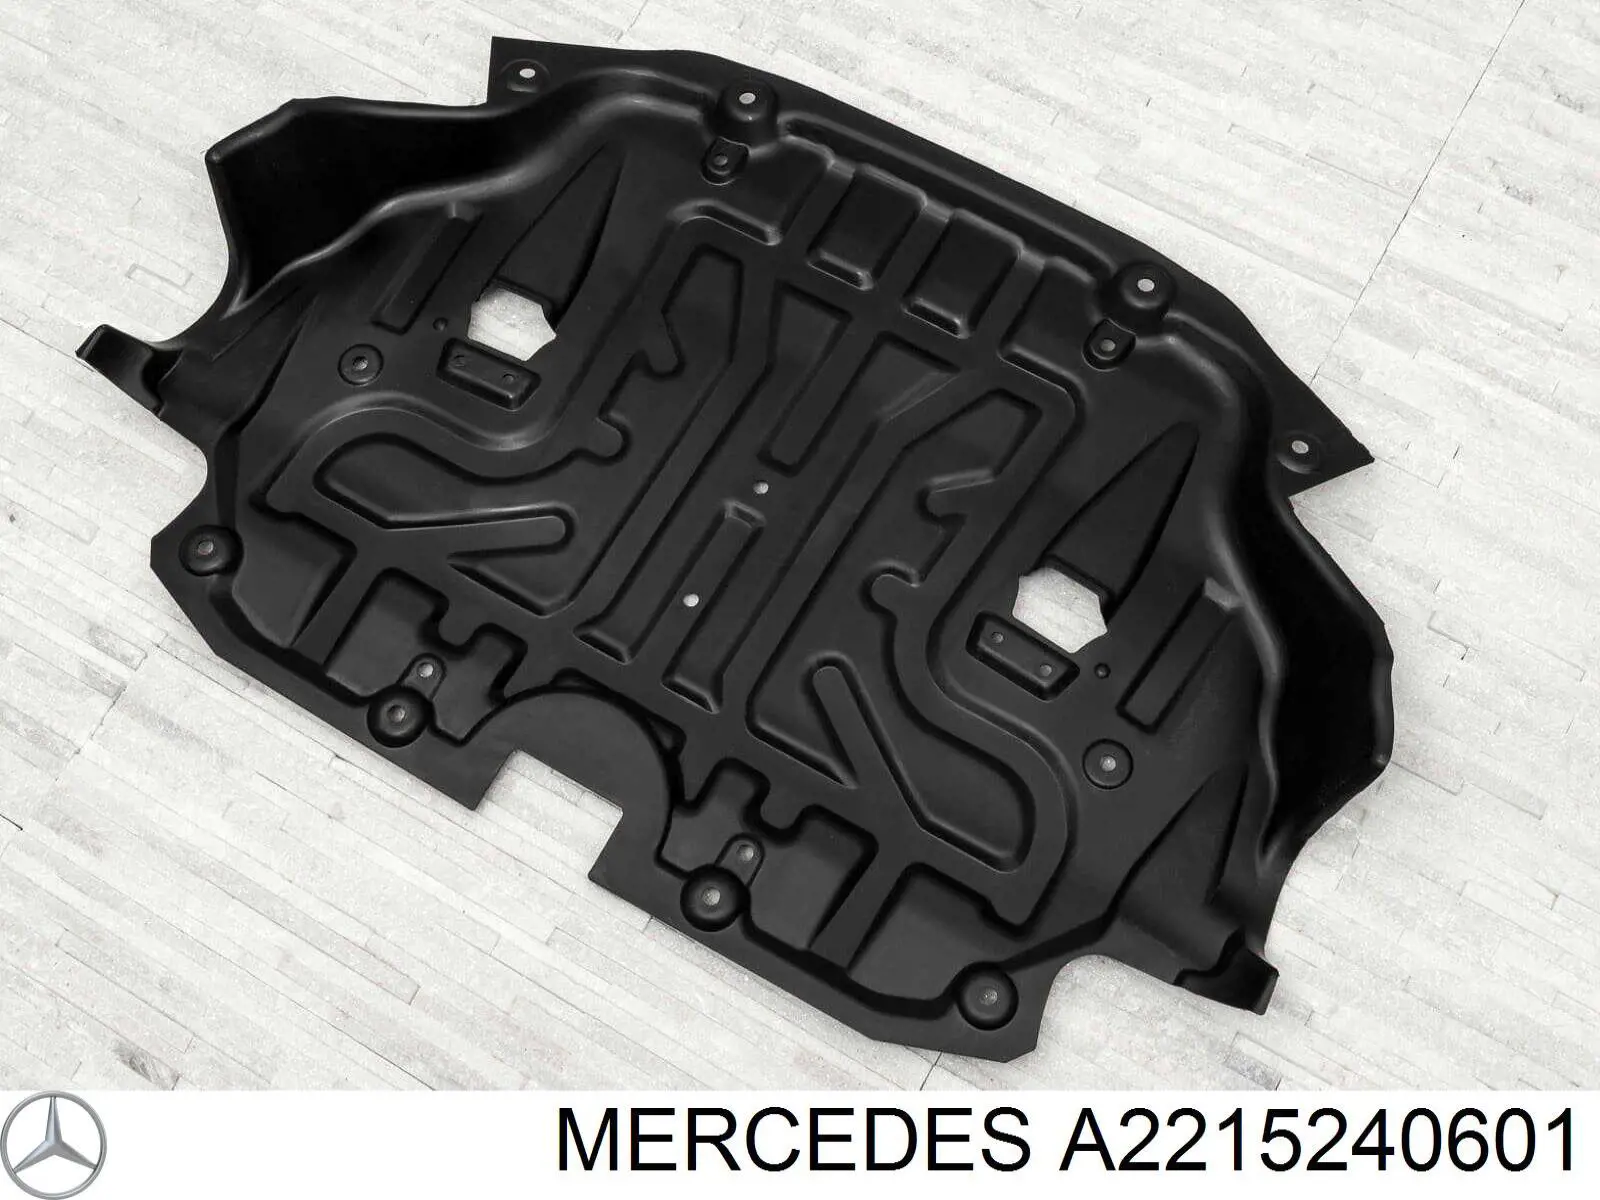 A2215241301 Mercedes protección motor / empotramiento